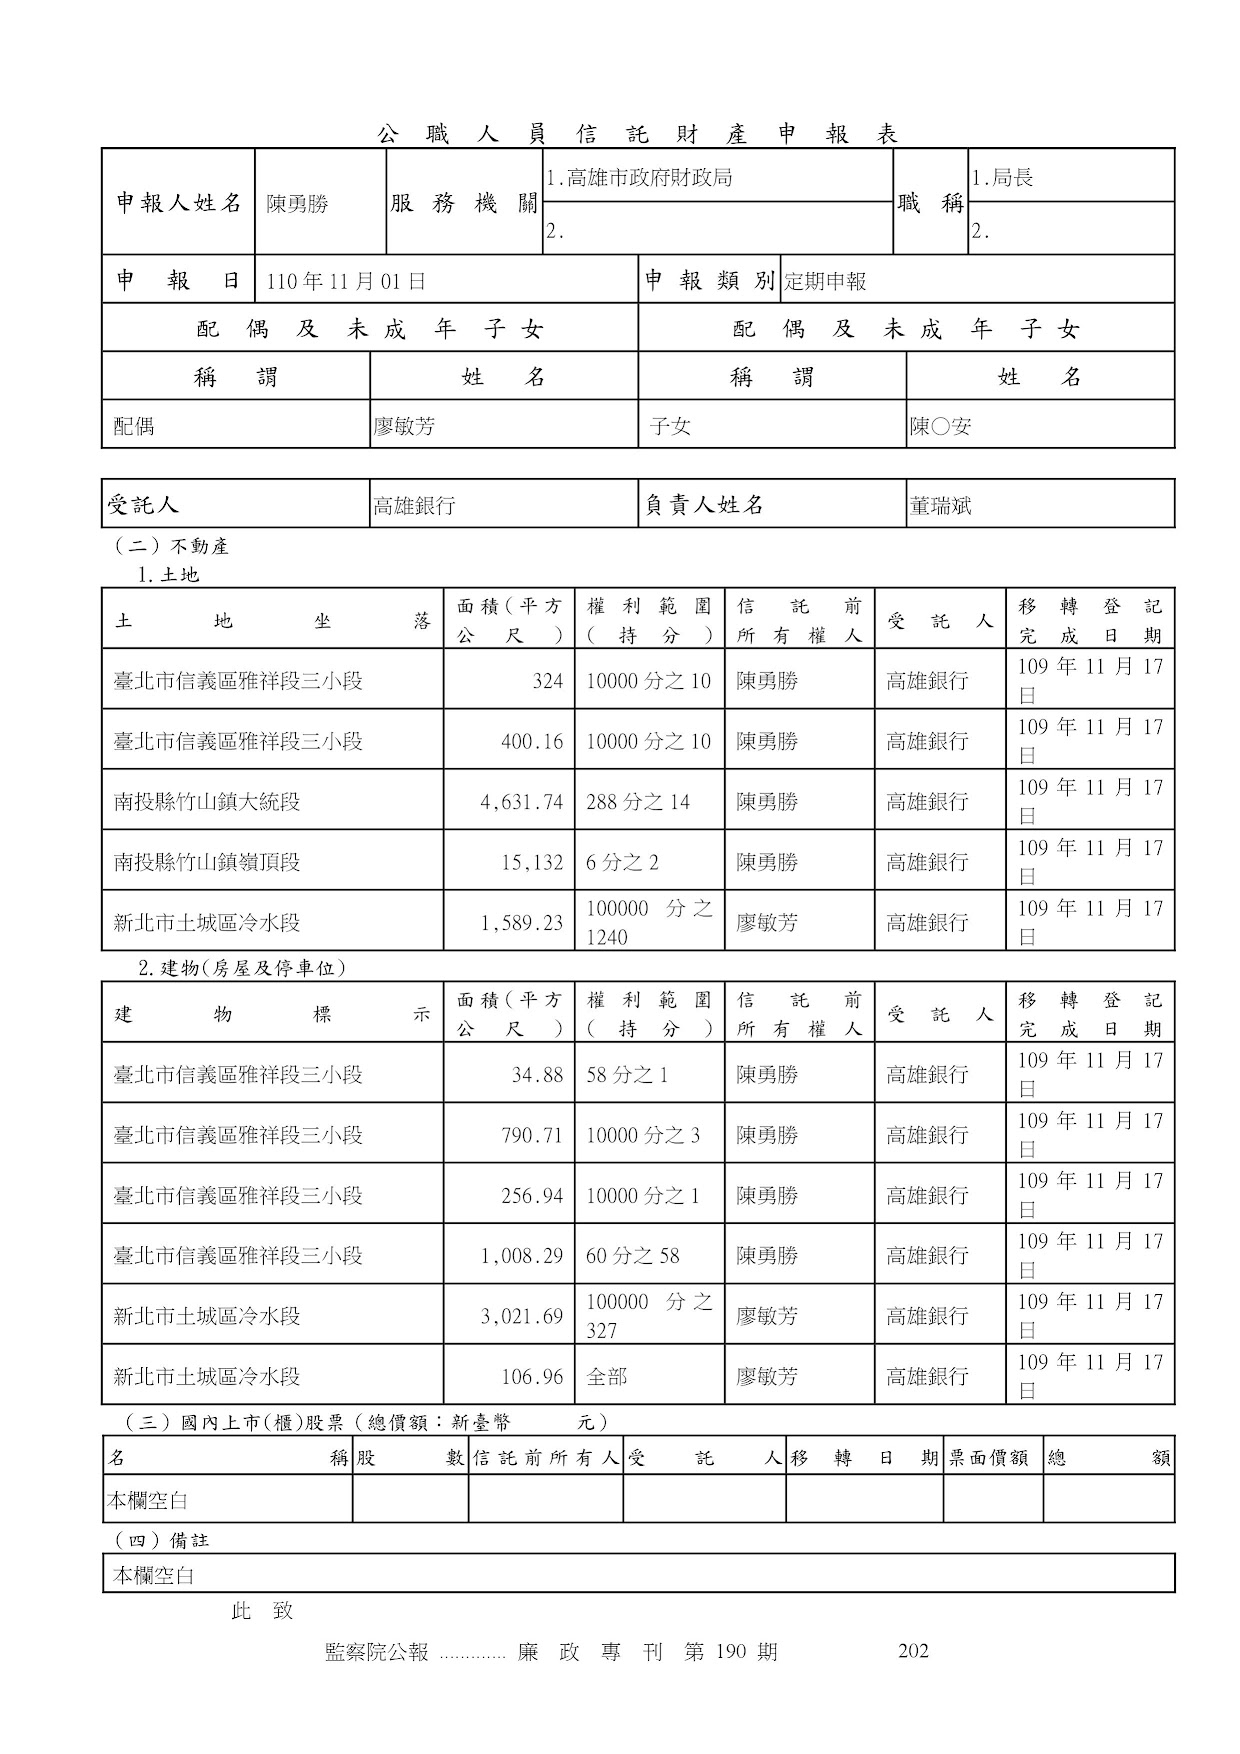 陳勇勝-公職人員財產申報資料-廉政專刊第190期